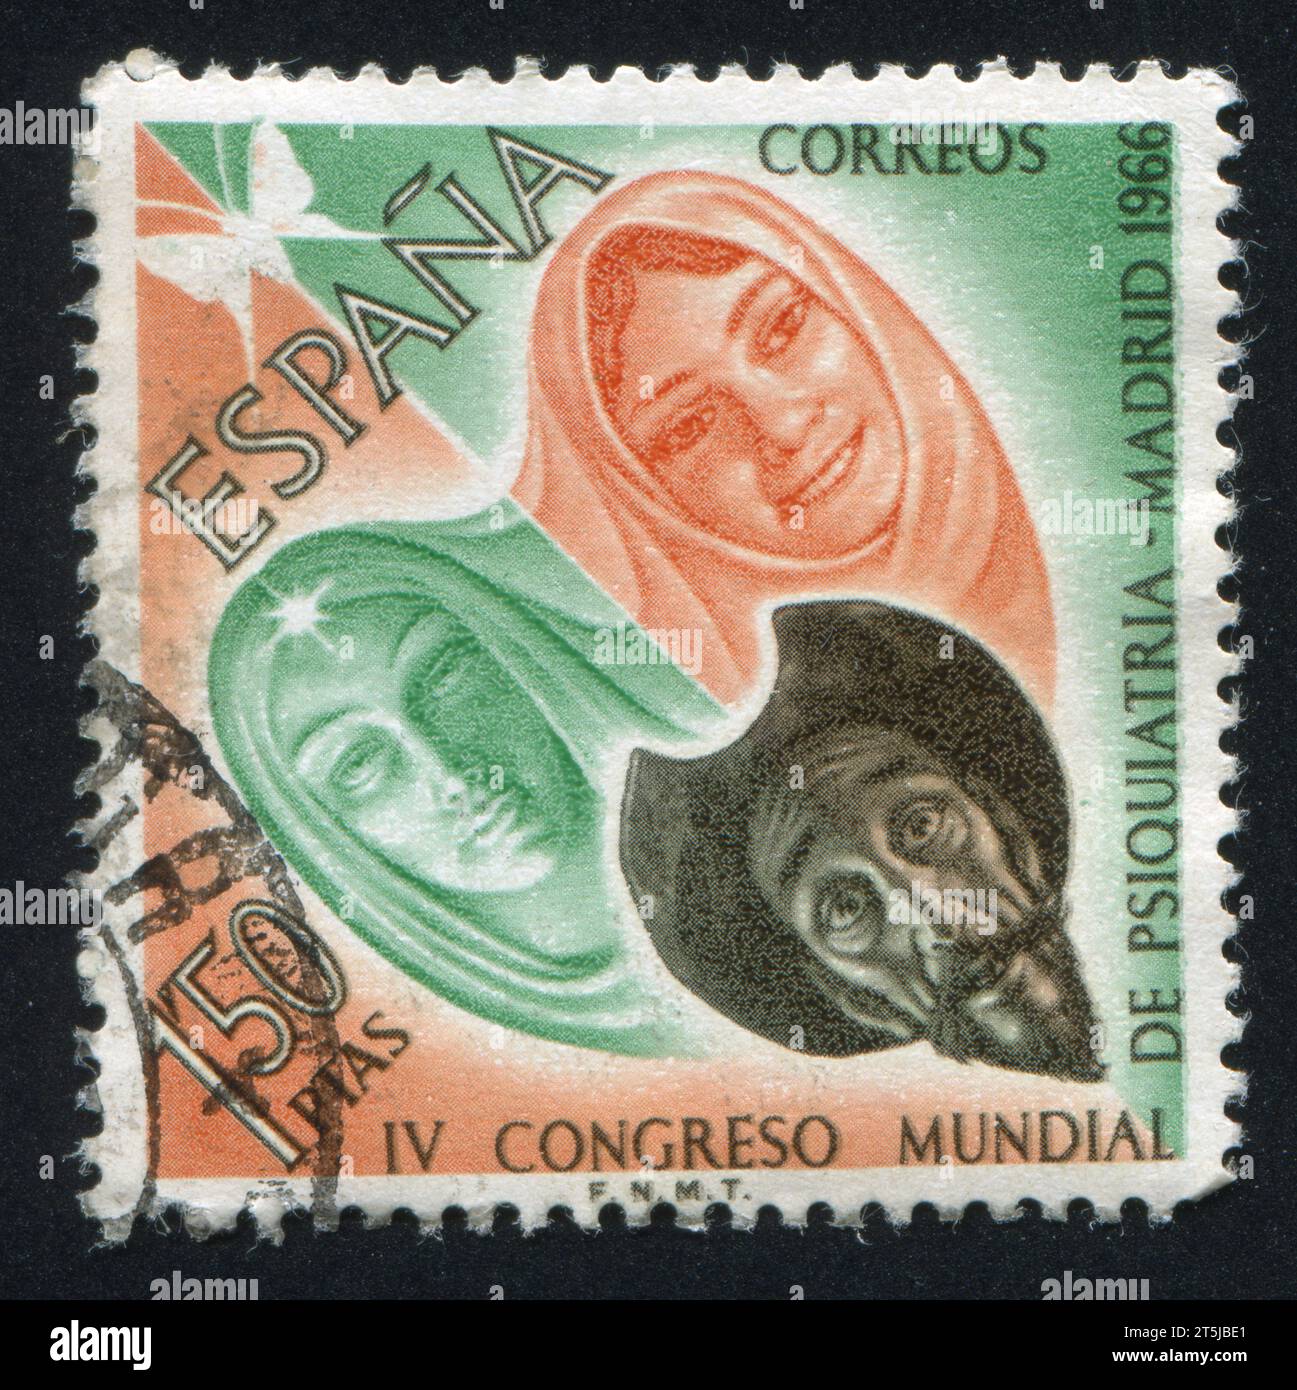 ESPAGNE — VERS 1966 : timbre imprimé par l'Espagne, montrant Don Quichotte, Dulcinée et Aldonza, vers 1966. Banque D'Images